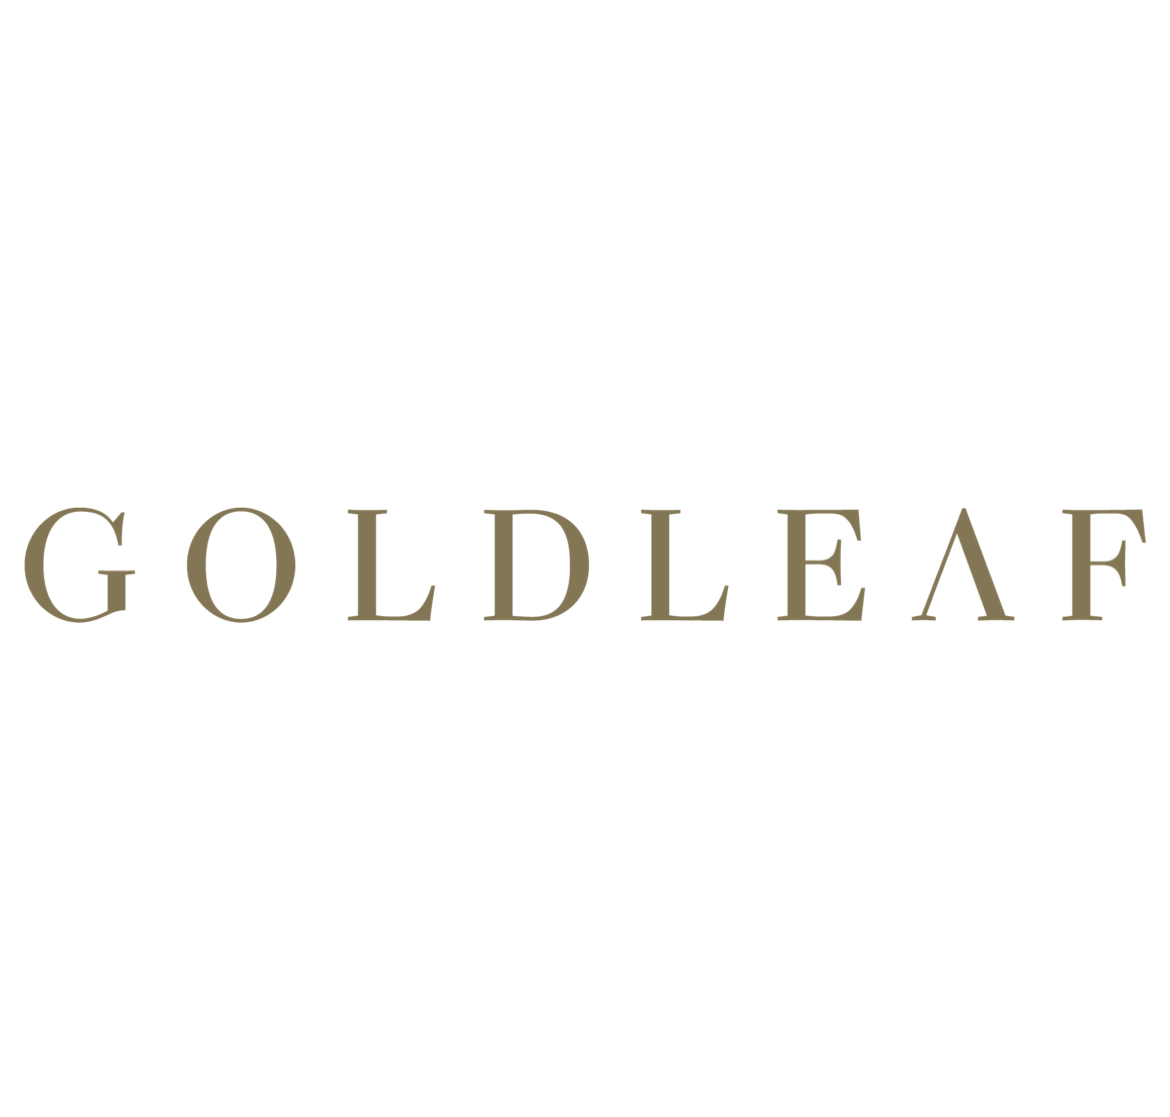 Goldleaf logo